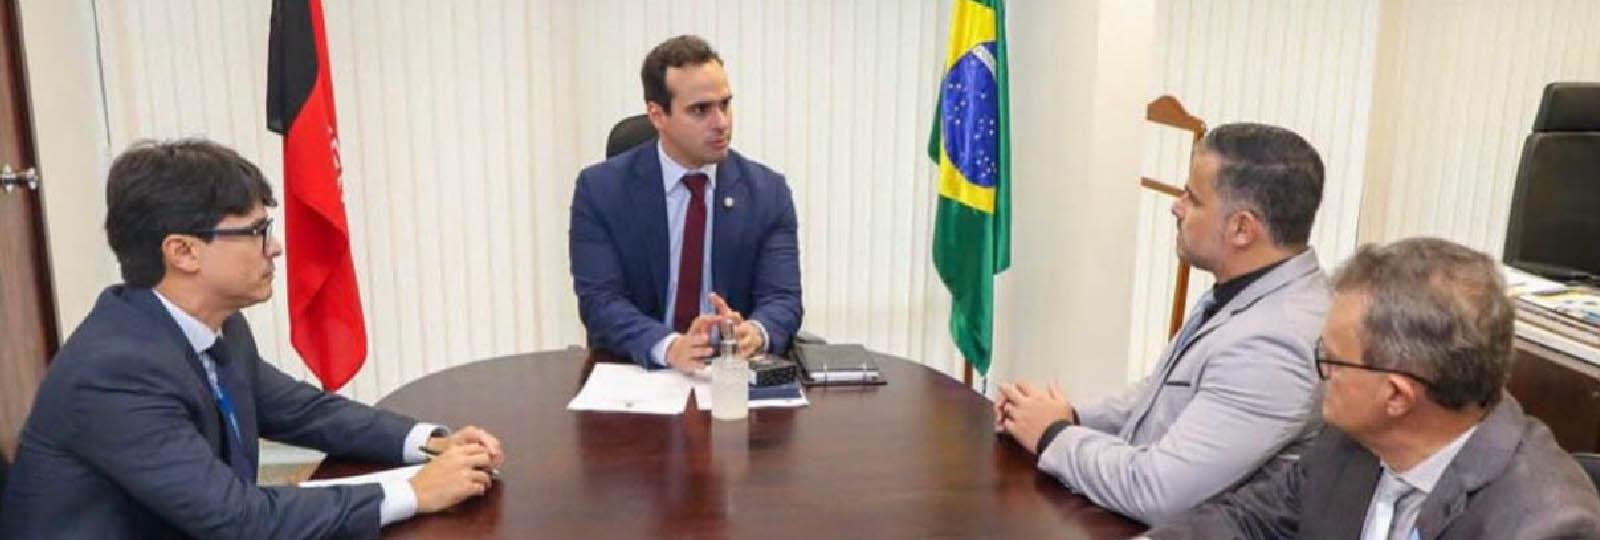 Na última semana o prefeito Felício Queiroz, participou de mais uma importante reunião em Brasília, na busca por melhorias e desenvolvimento para nossa amada cidade